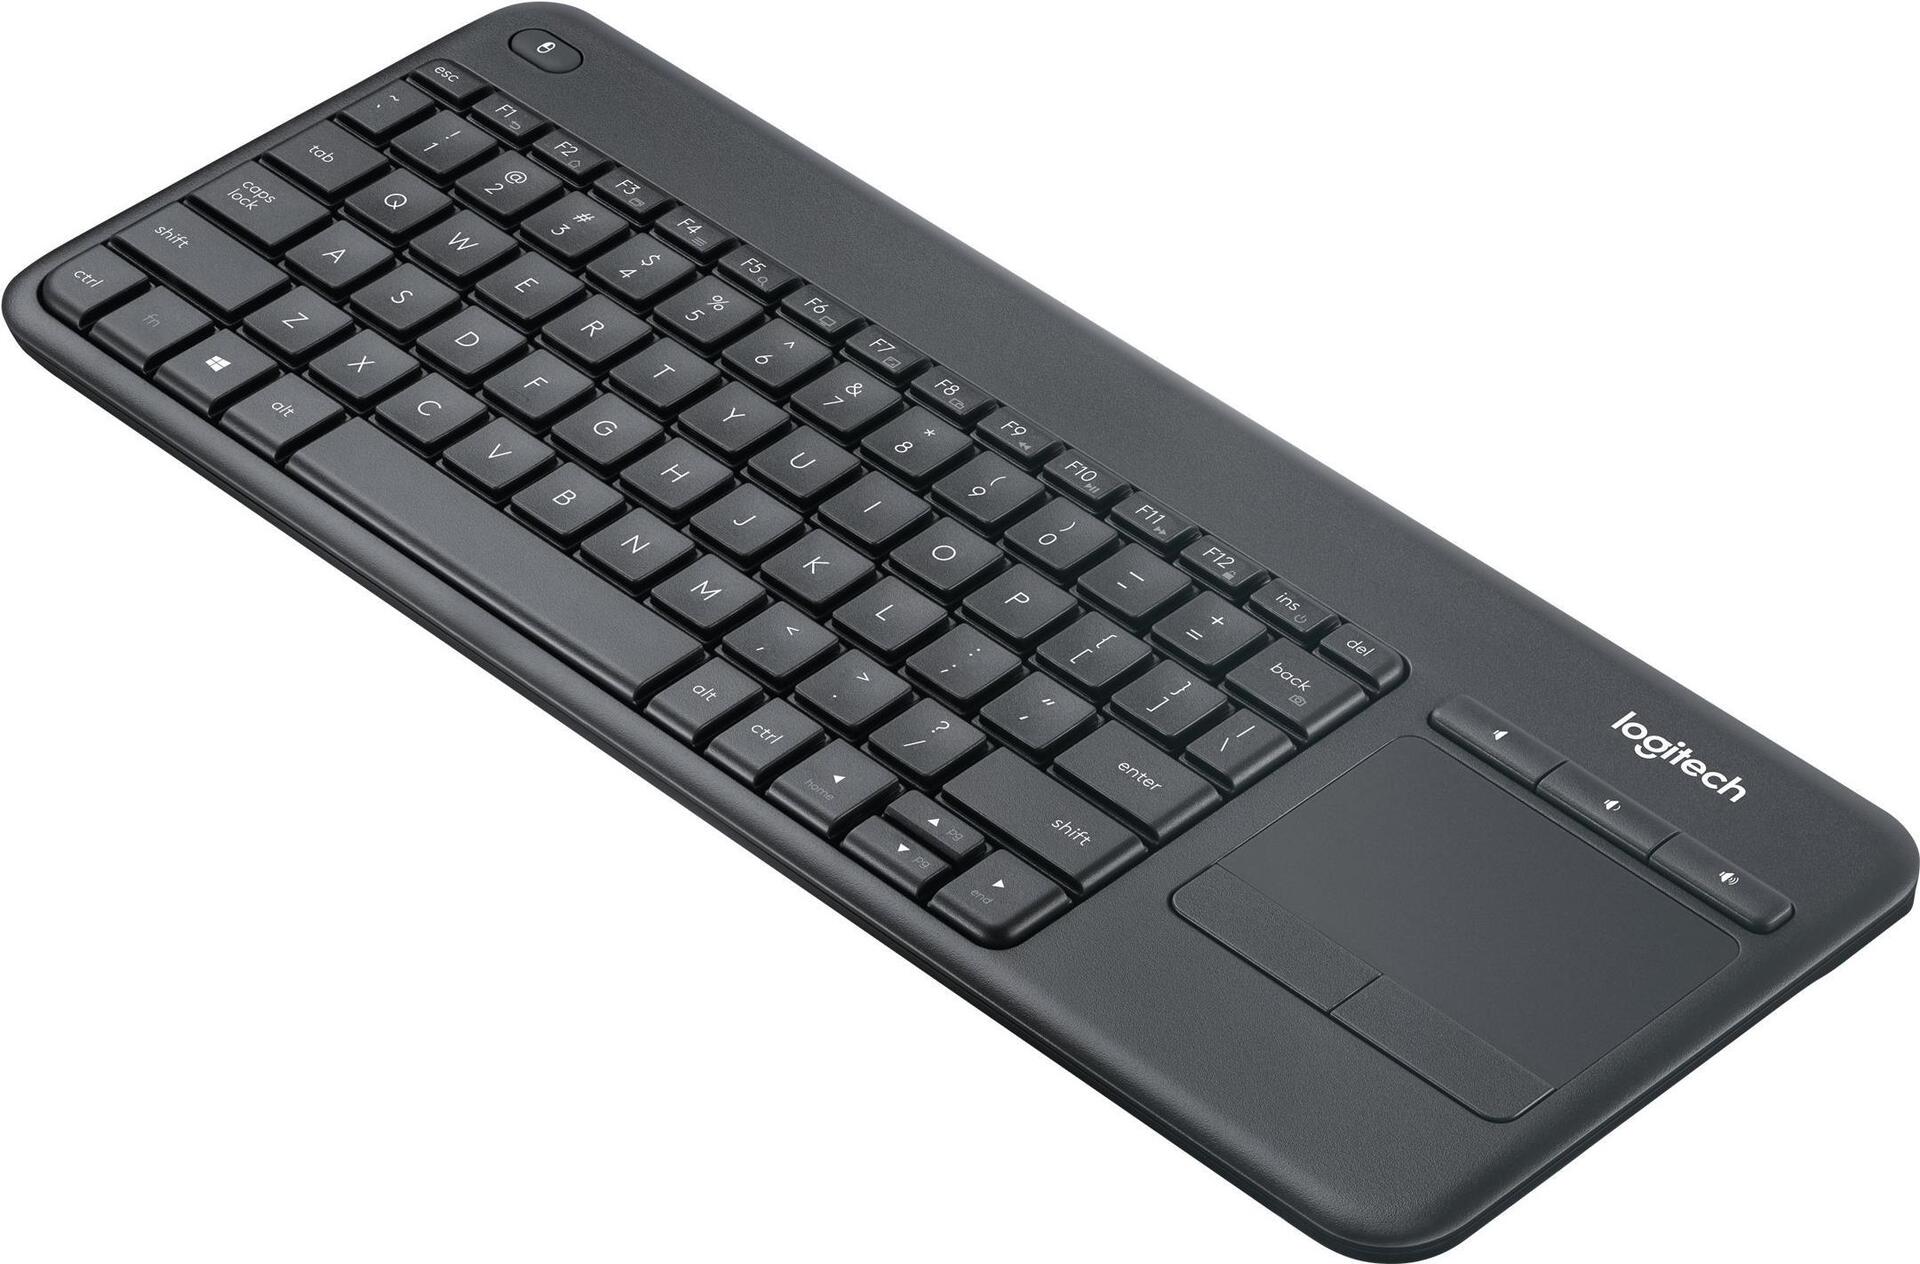 Logitech Wireless Touch Keyboard K400 Plus (920-007151)